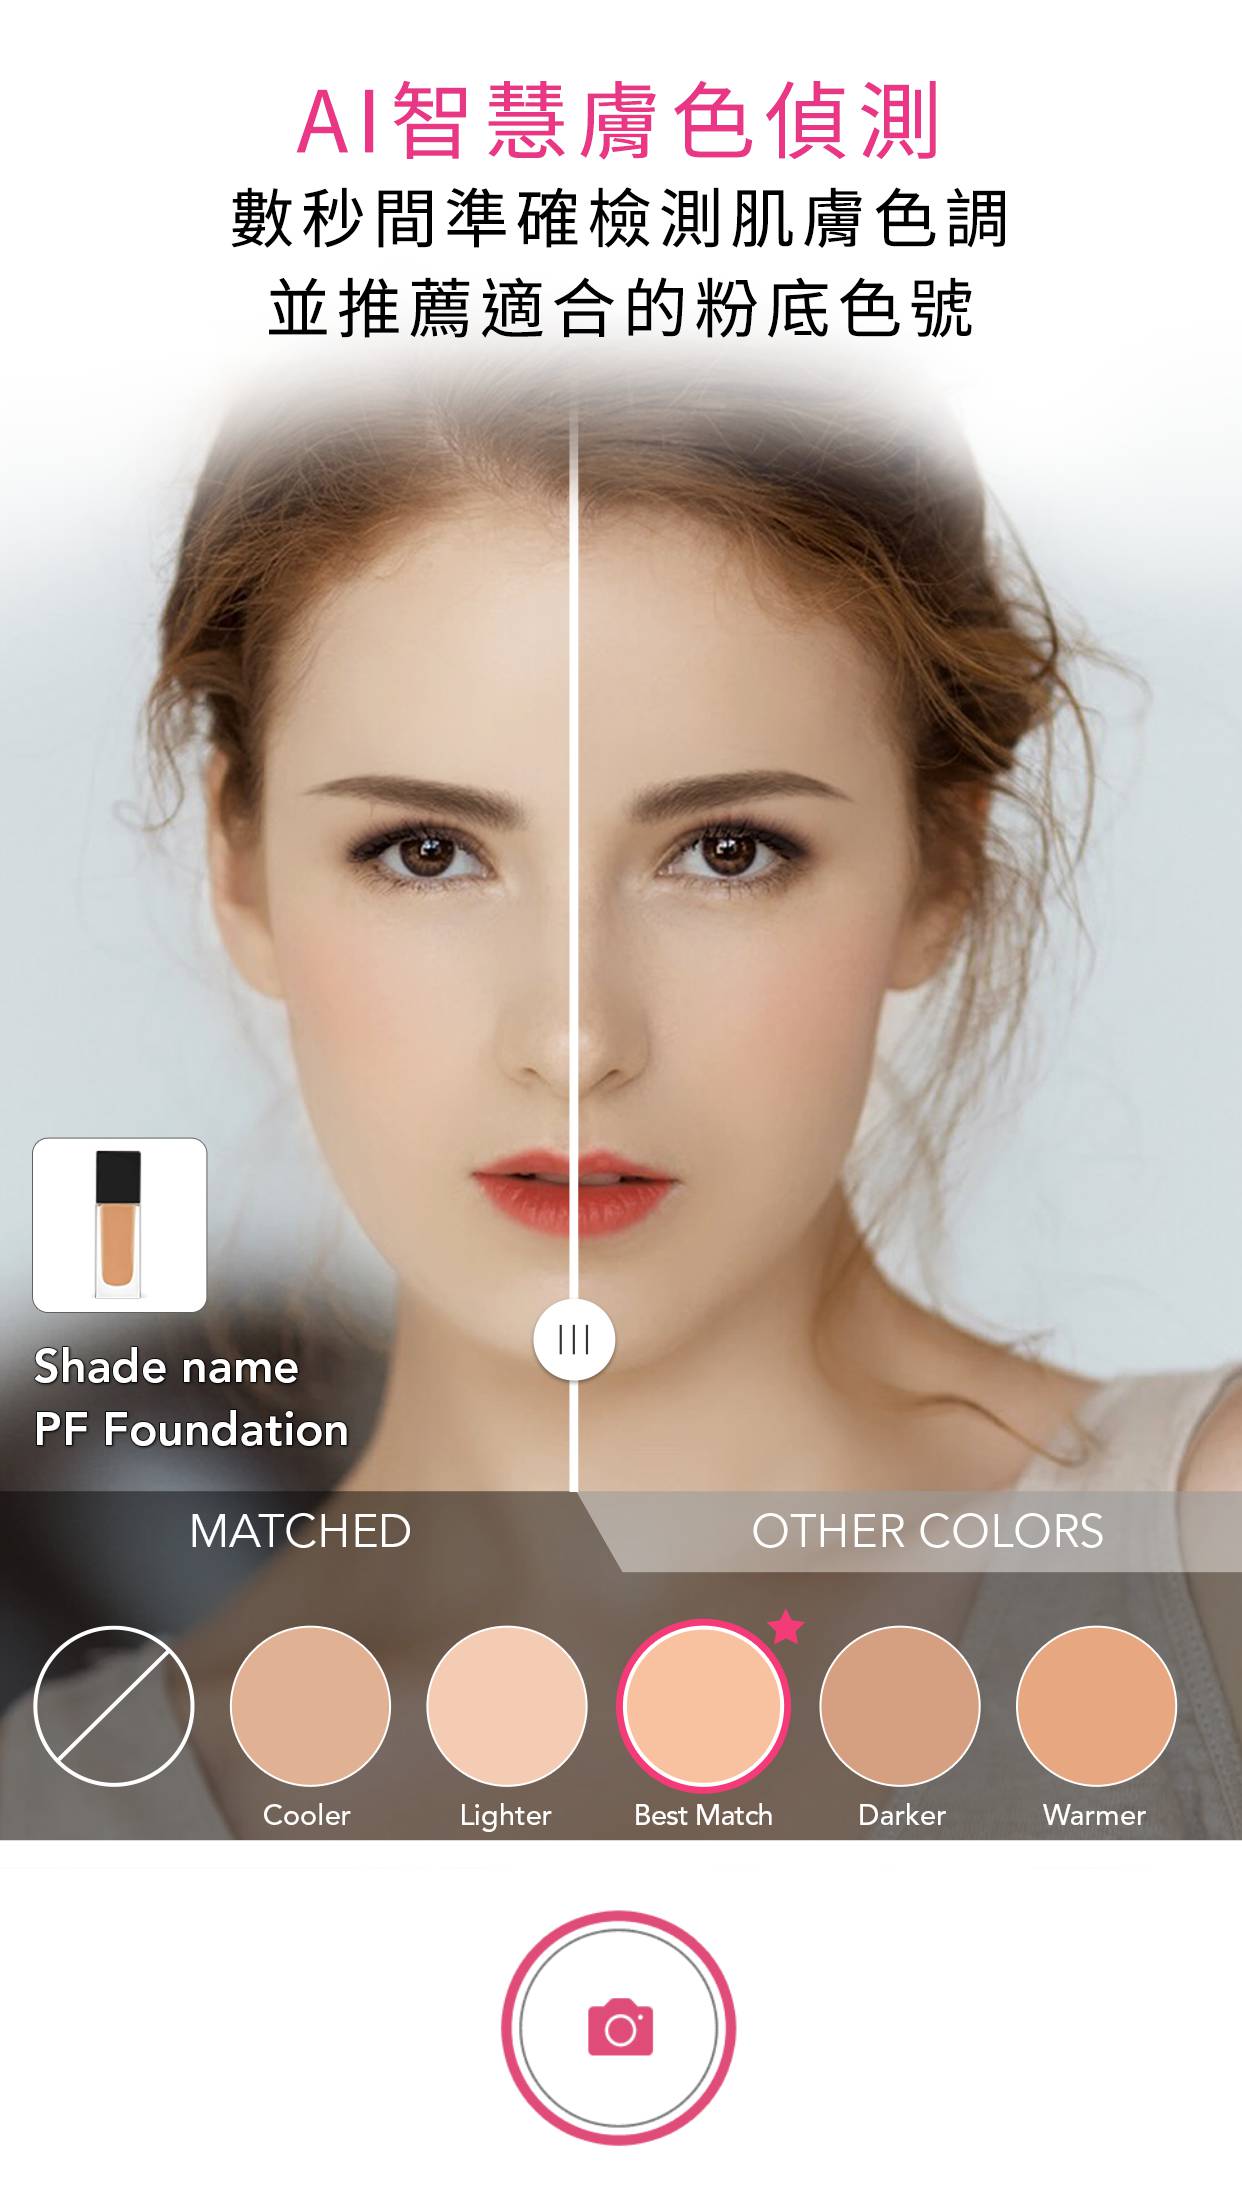 AI智慧肤色检测